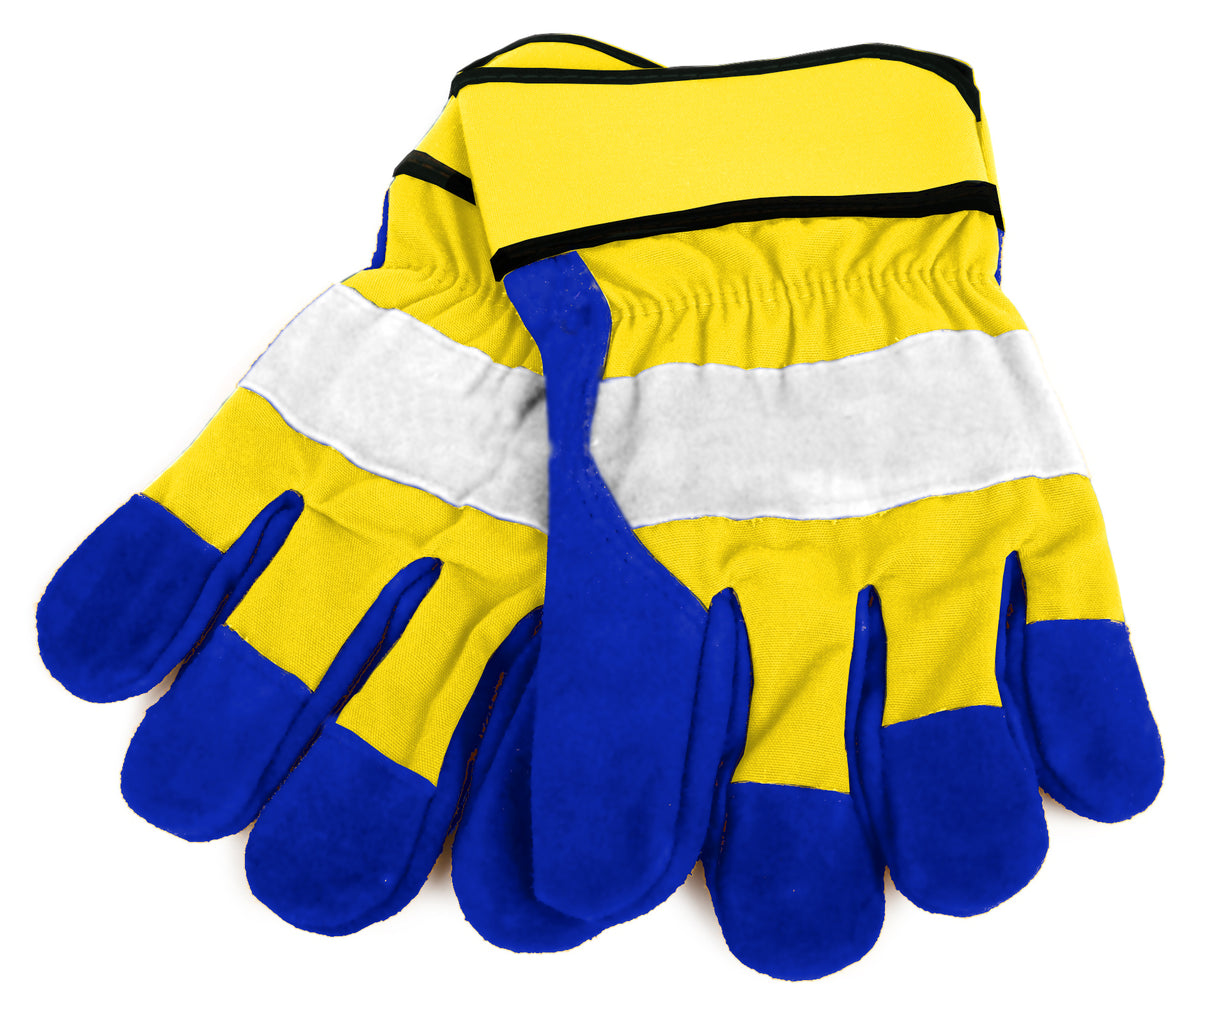 Wenaas Odin® Road Work Gloves 6-6484 Oil & Water Resistant Hi-Vis